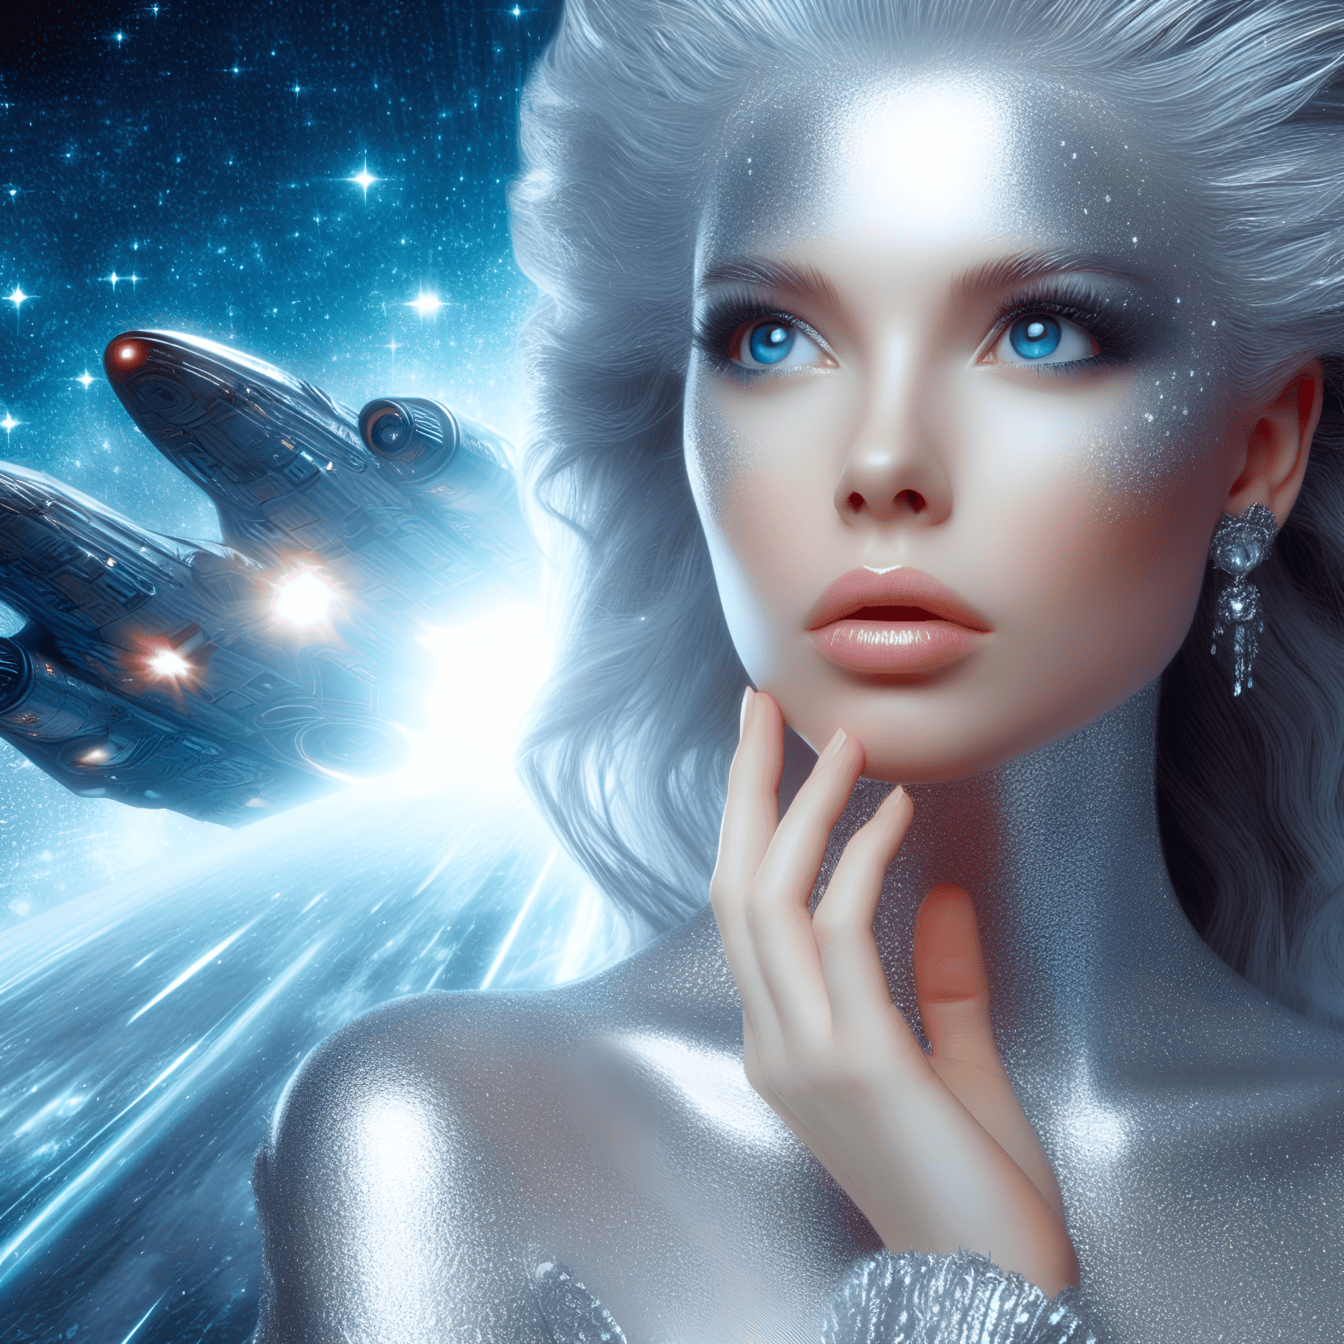 Portret van een godin van een vreemd hoger wezen met een ruimteschip op de achtergrond